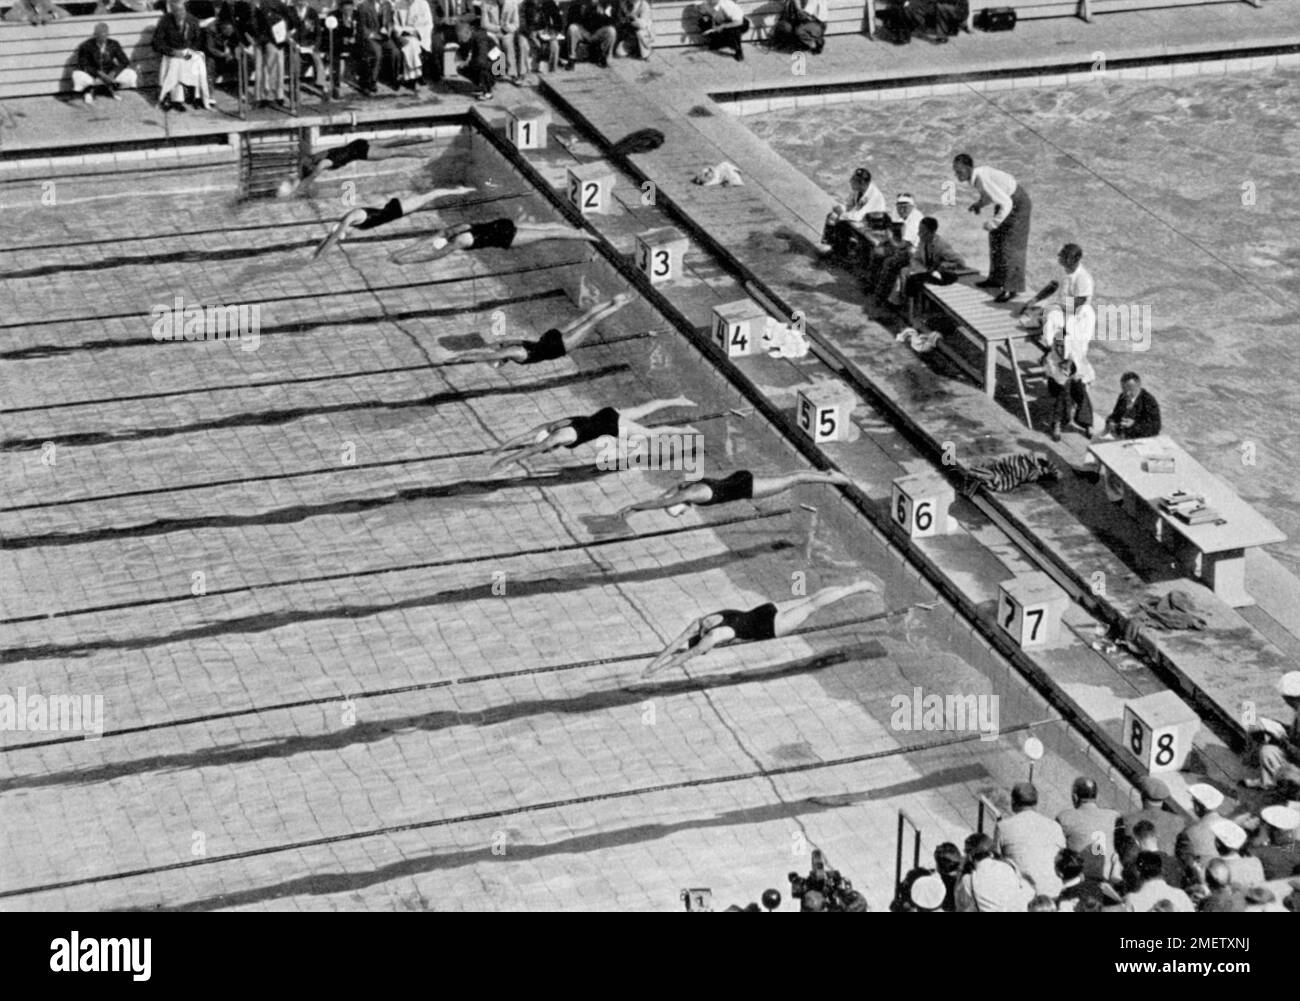 Schwimmen, Beginn der Frau 100 m Freestyle Finale: Ria Mastenbrock beginnt bei Block Nr. 5 Stockfoto